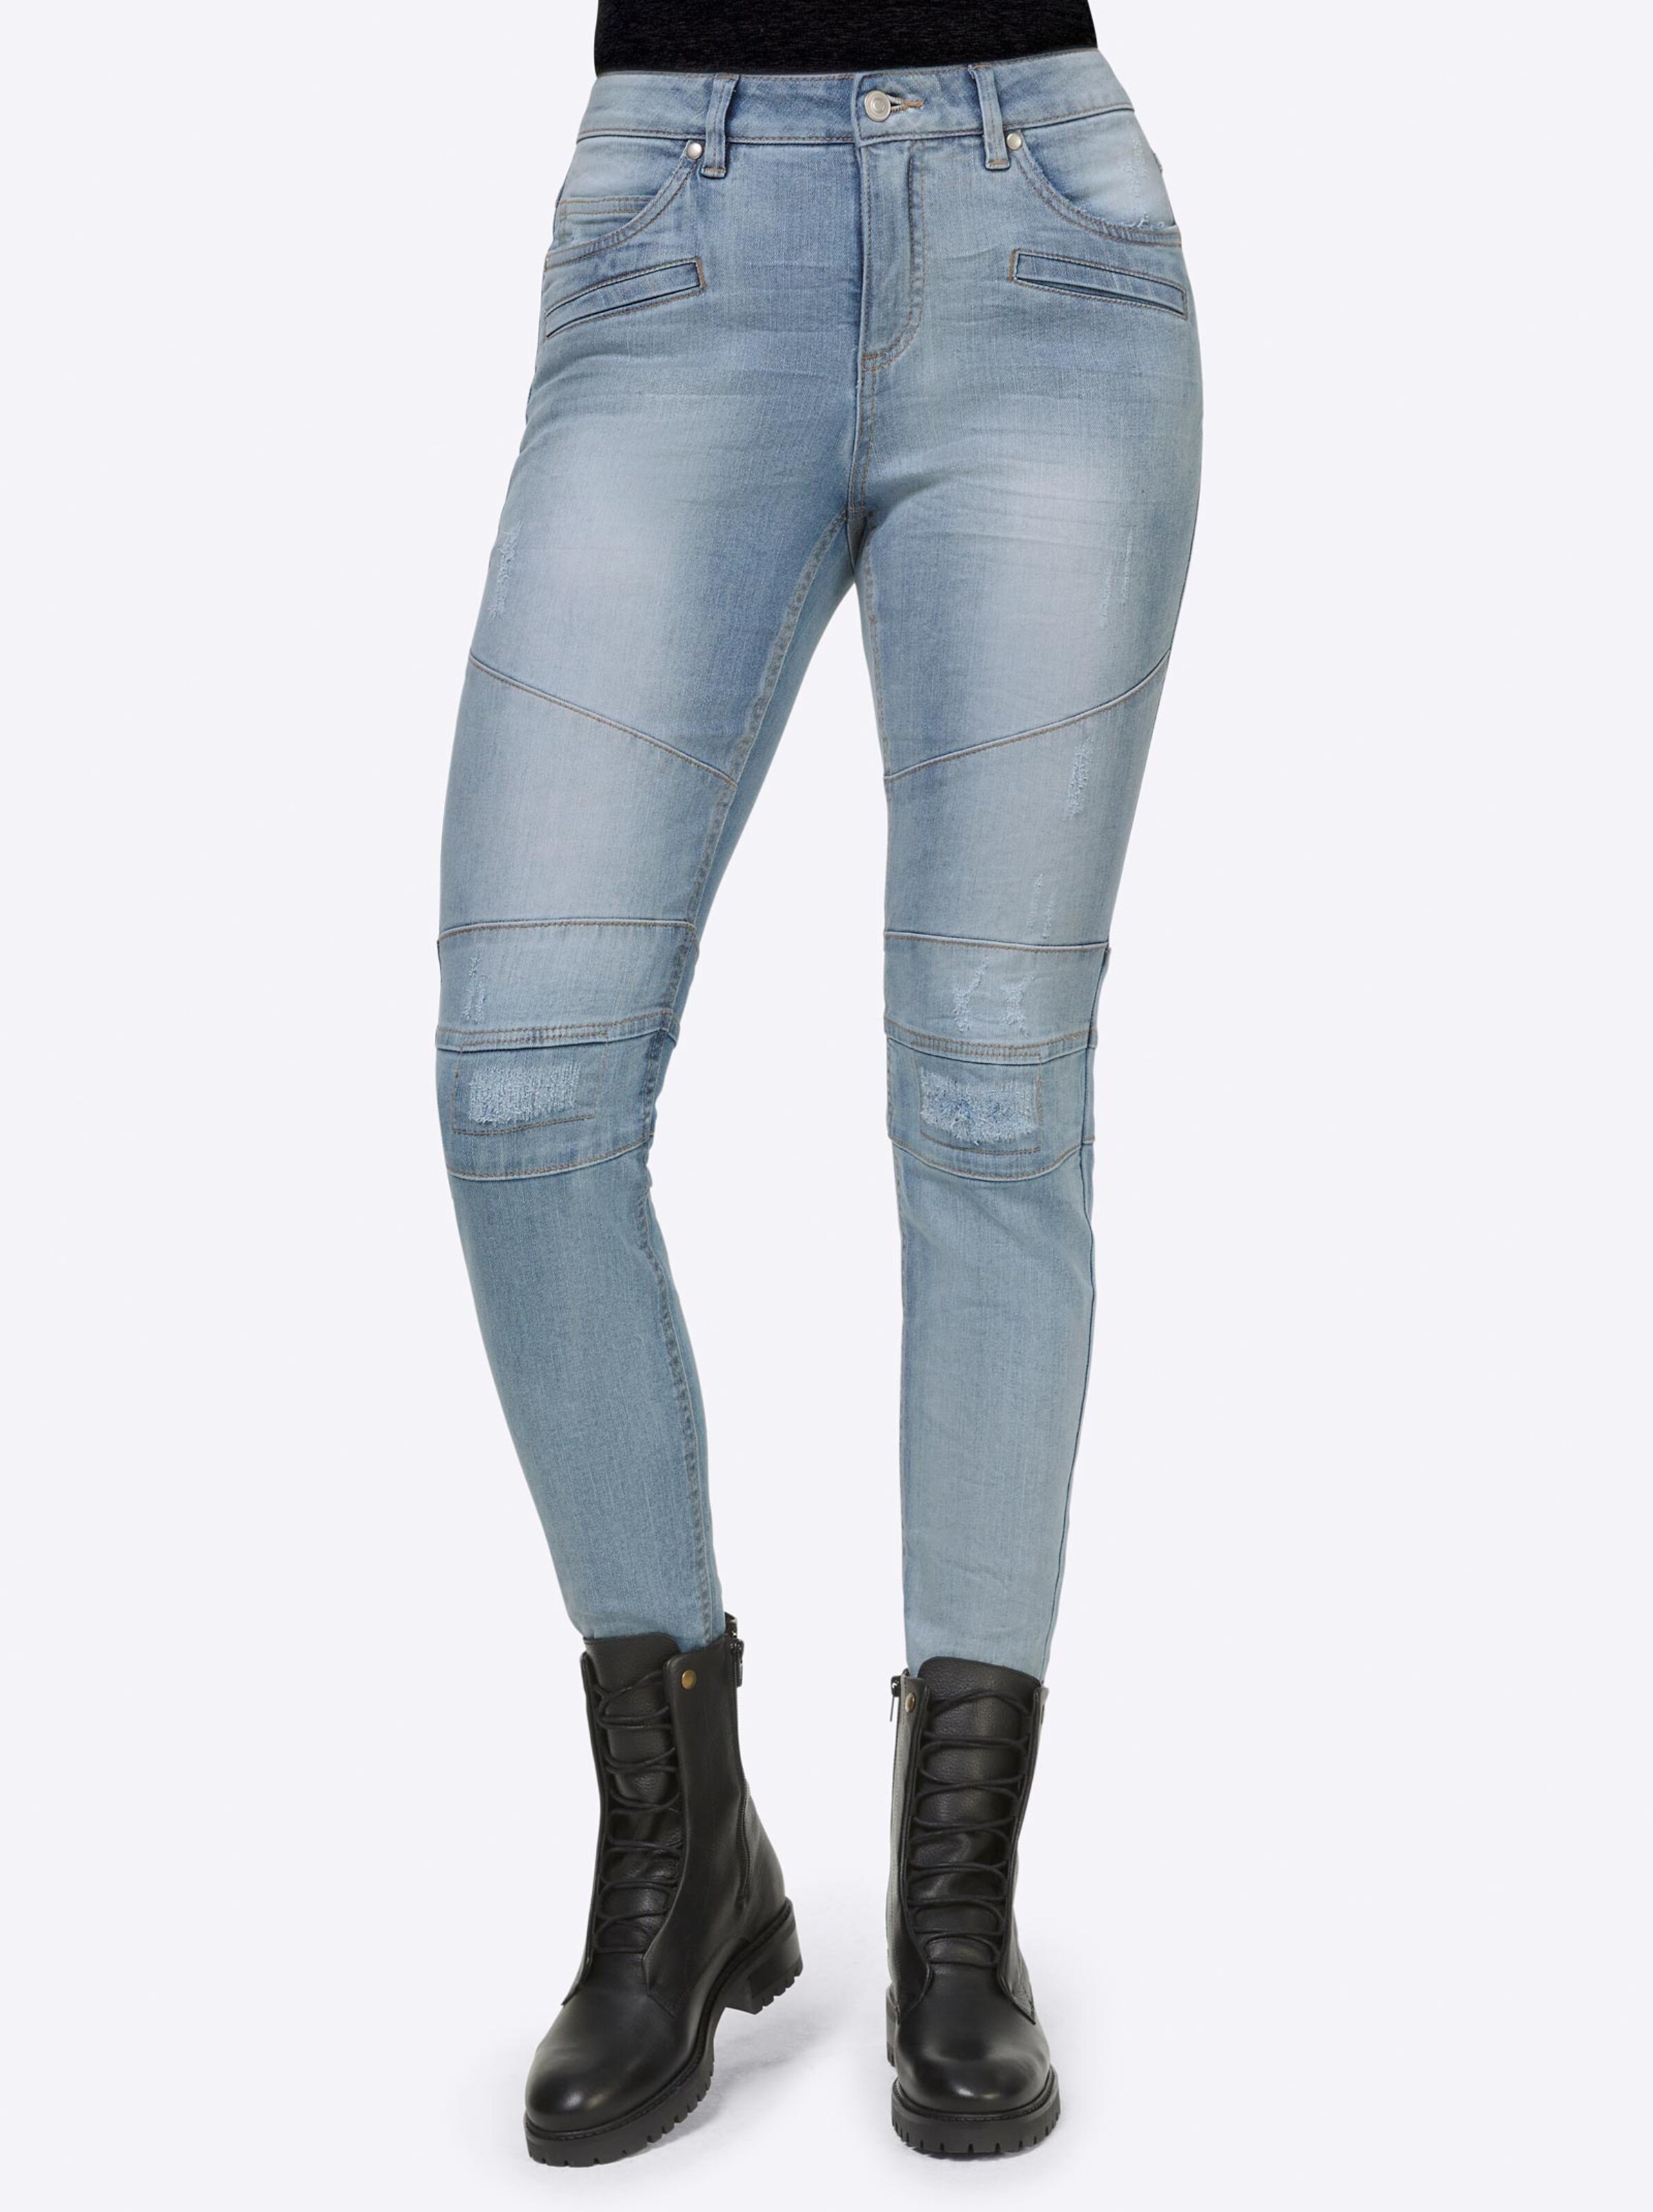 Damenmode Jeans Jeans in blue-bleached 